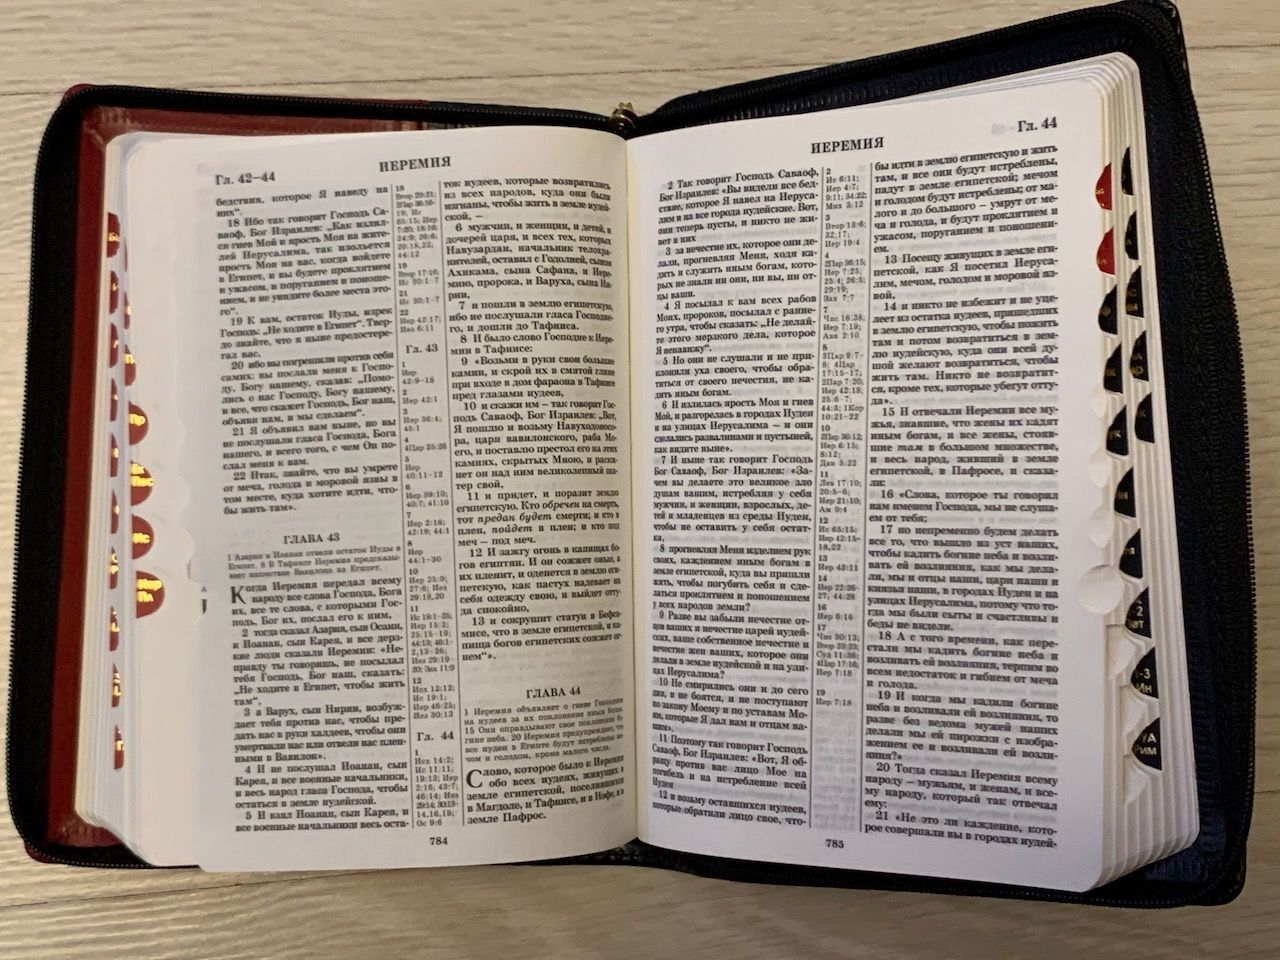 БИБЛИЯ 046DTzti формат, переплет из искусственной кожи на молнии с индексами, надпись золотом "Библия", цвет темно-синий/синий, средний формат, 132*182 мм, цветные карты, шрифт 12 кегель